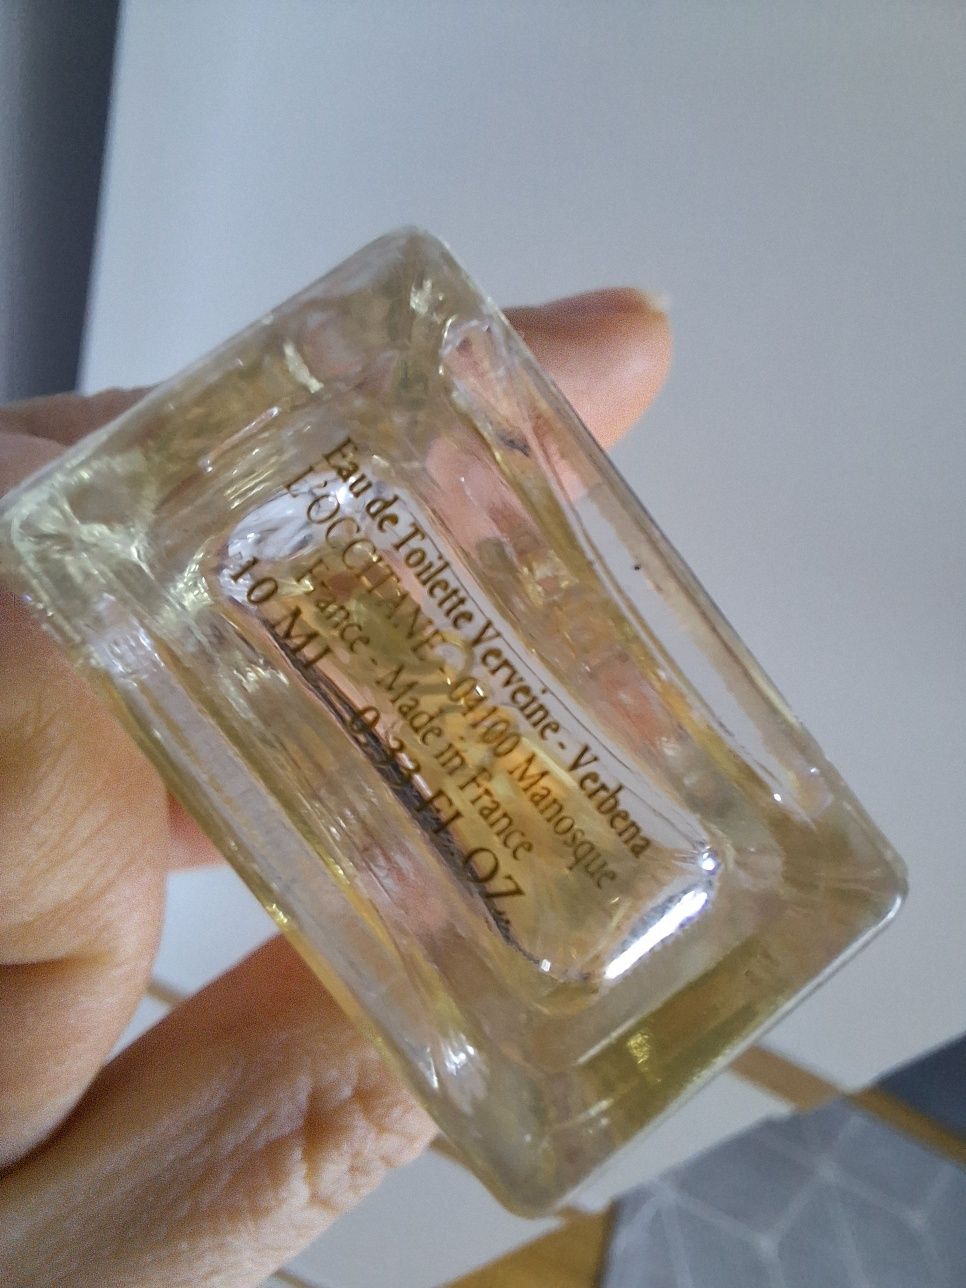 Perfumy L'occitane Verveine Werbena edt miniaturka 10 ml